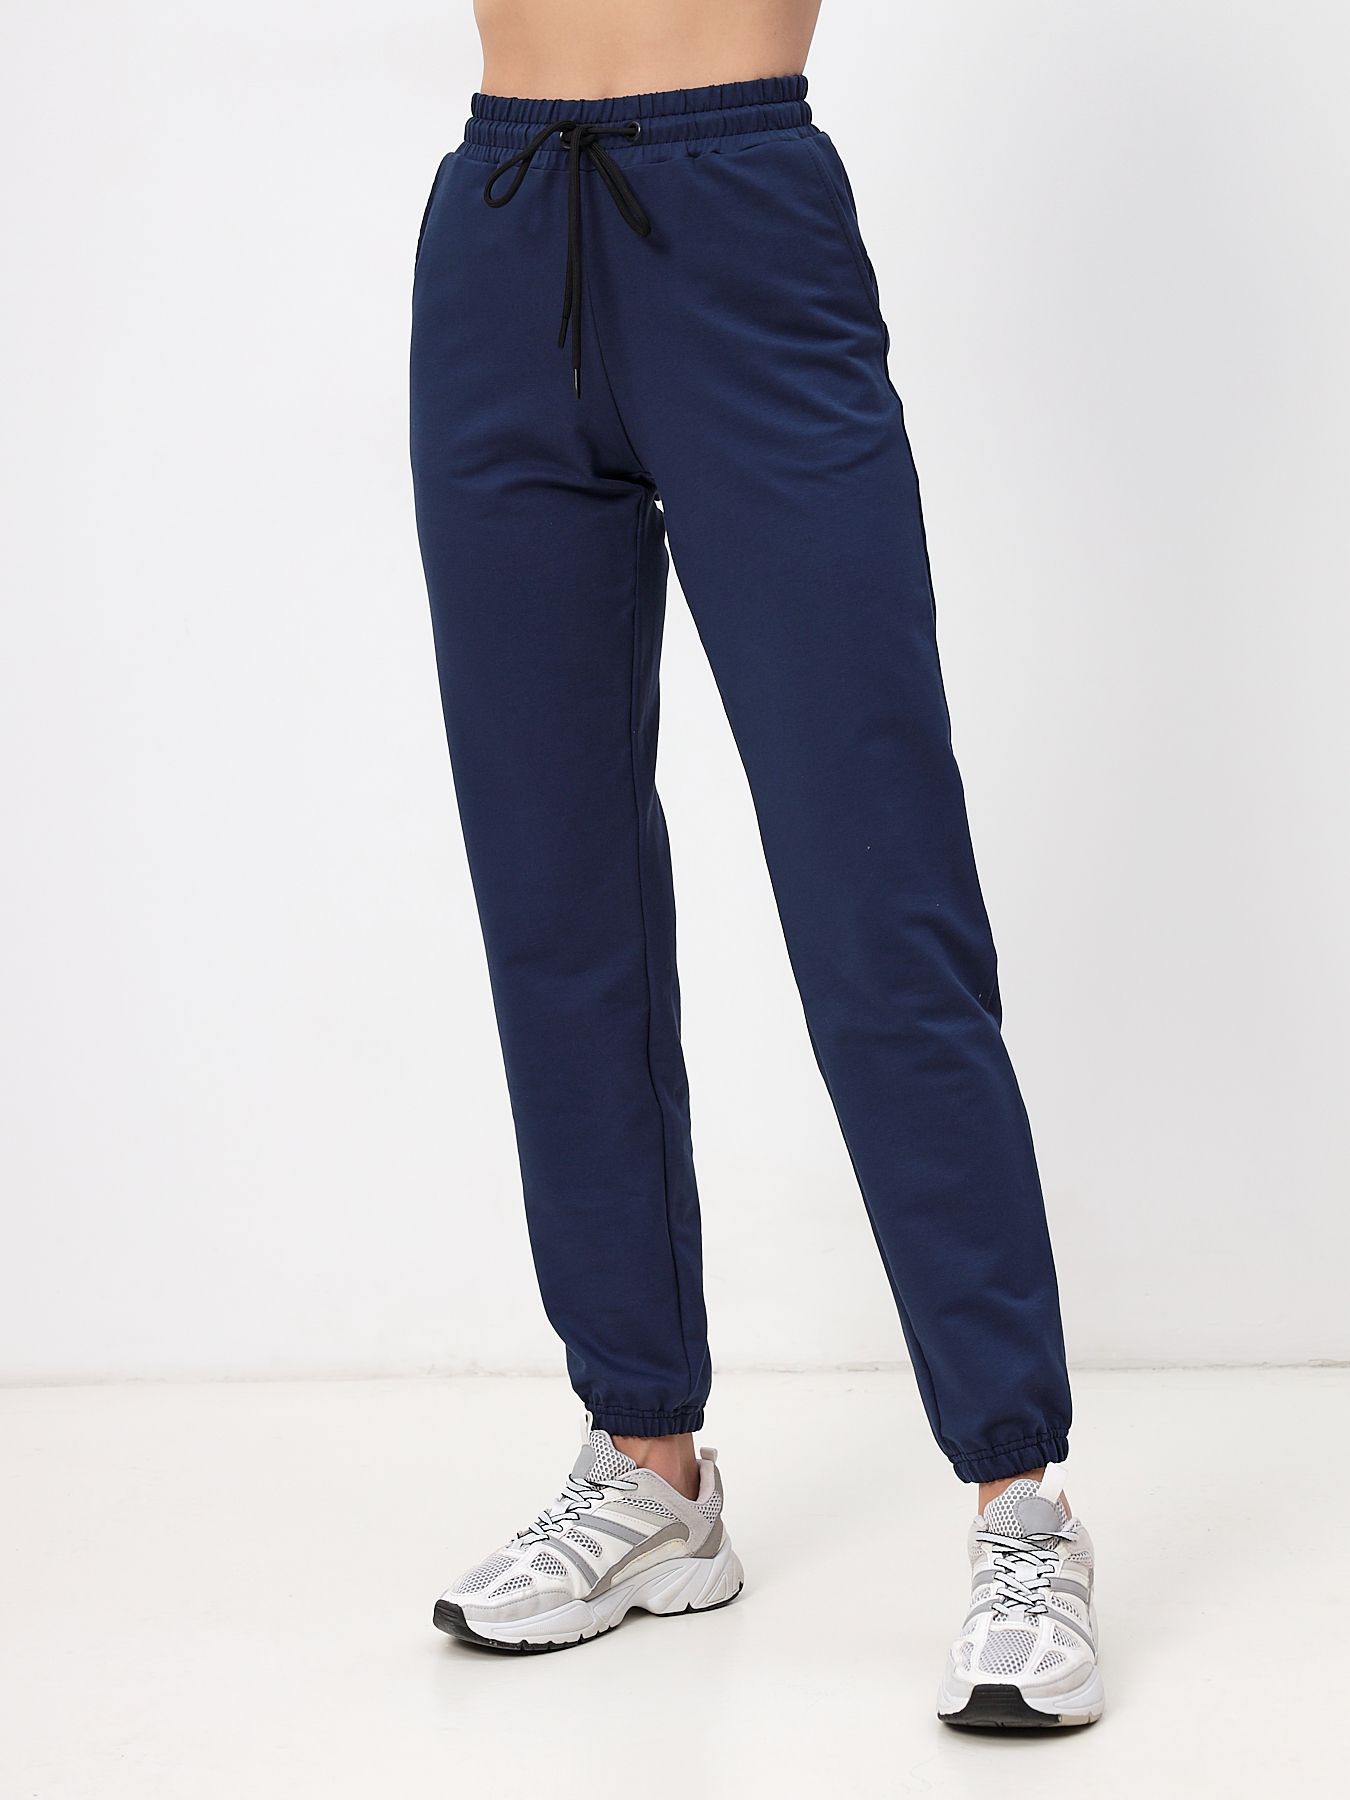 Спортивные брюки женские MOM №1 3170 синие 50 RU